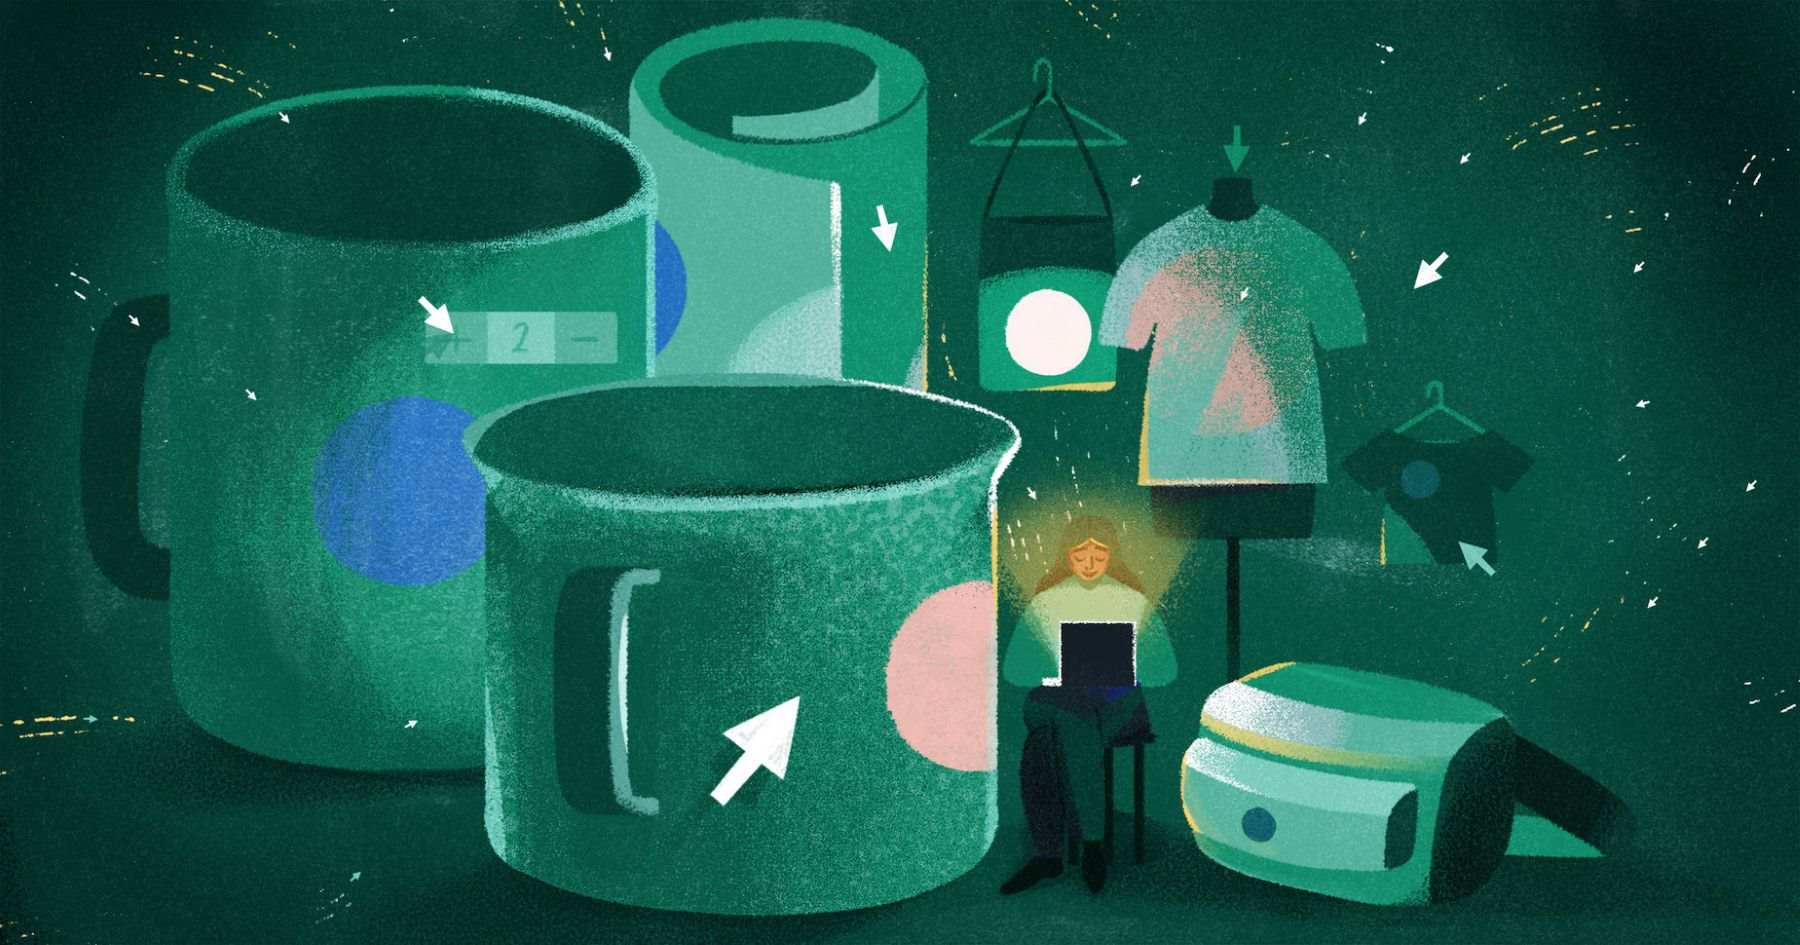 프린트 온 디맨드 제품의 컨셉을 표현하기 위해 마우스 커서가 있는 컵, 티셔츠, 가방이 그려진 녹색 일러스트